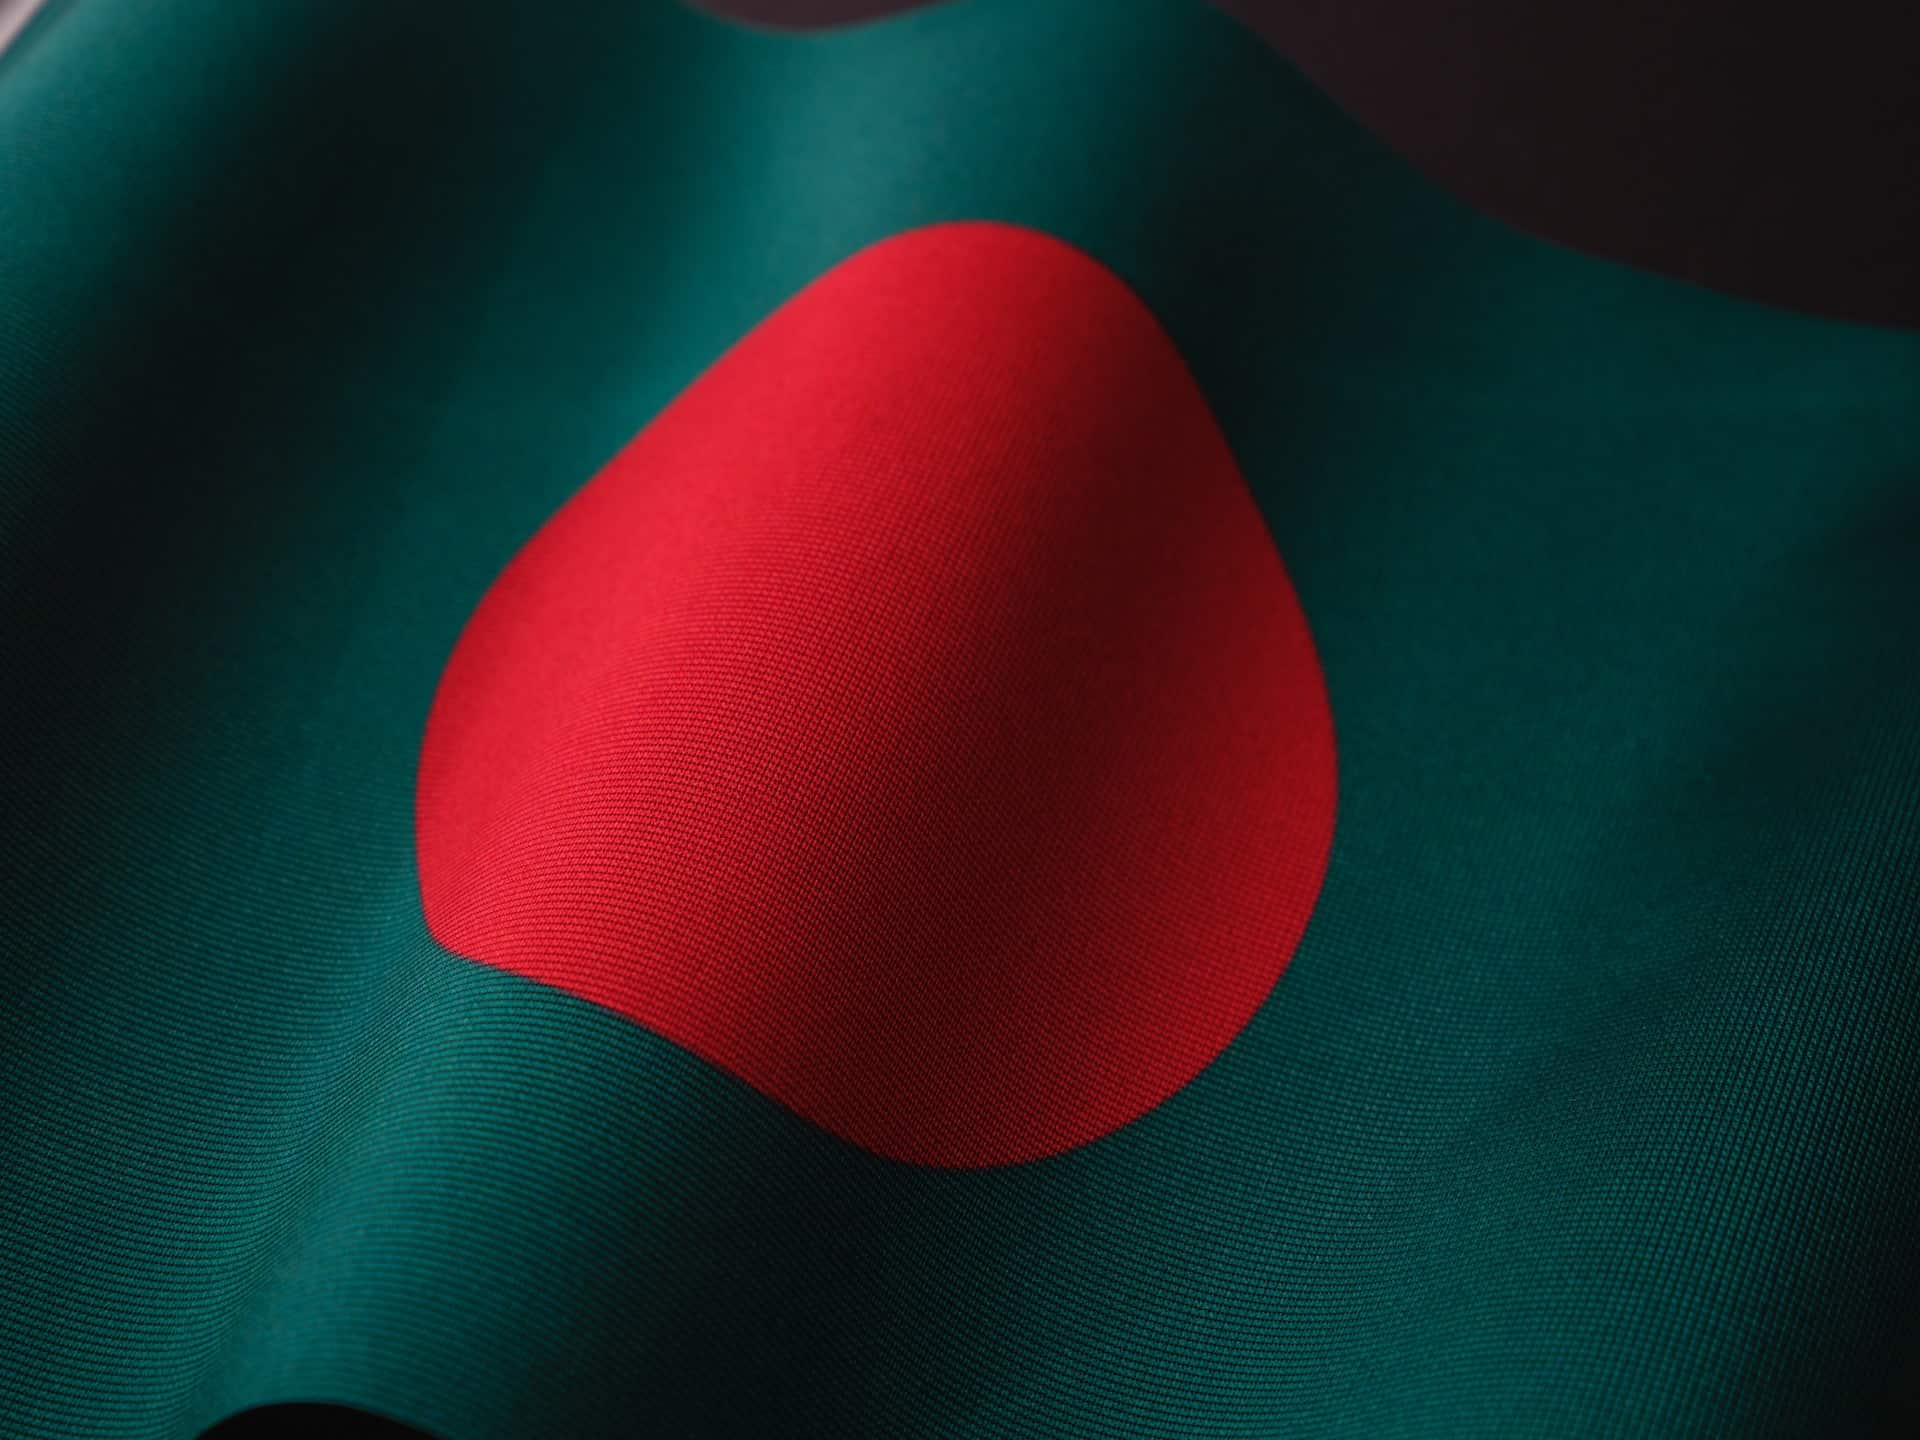 Bangladesh national flag